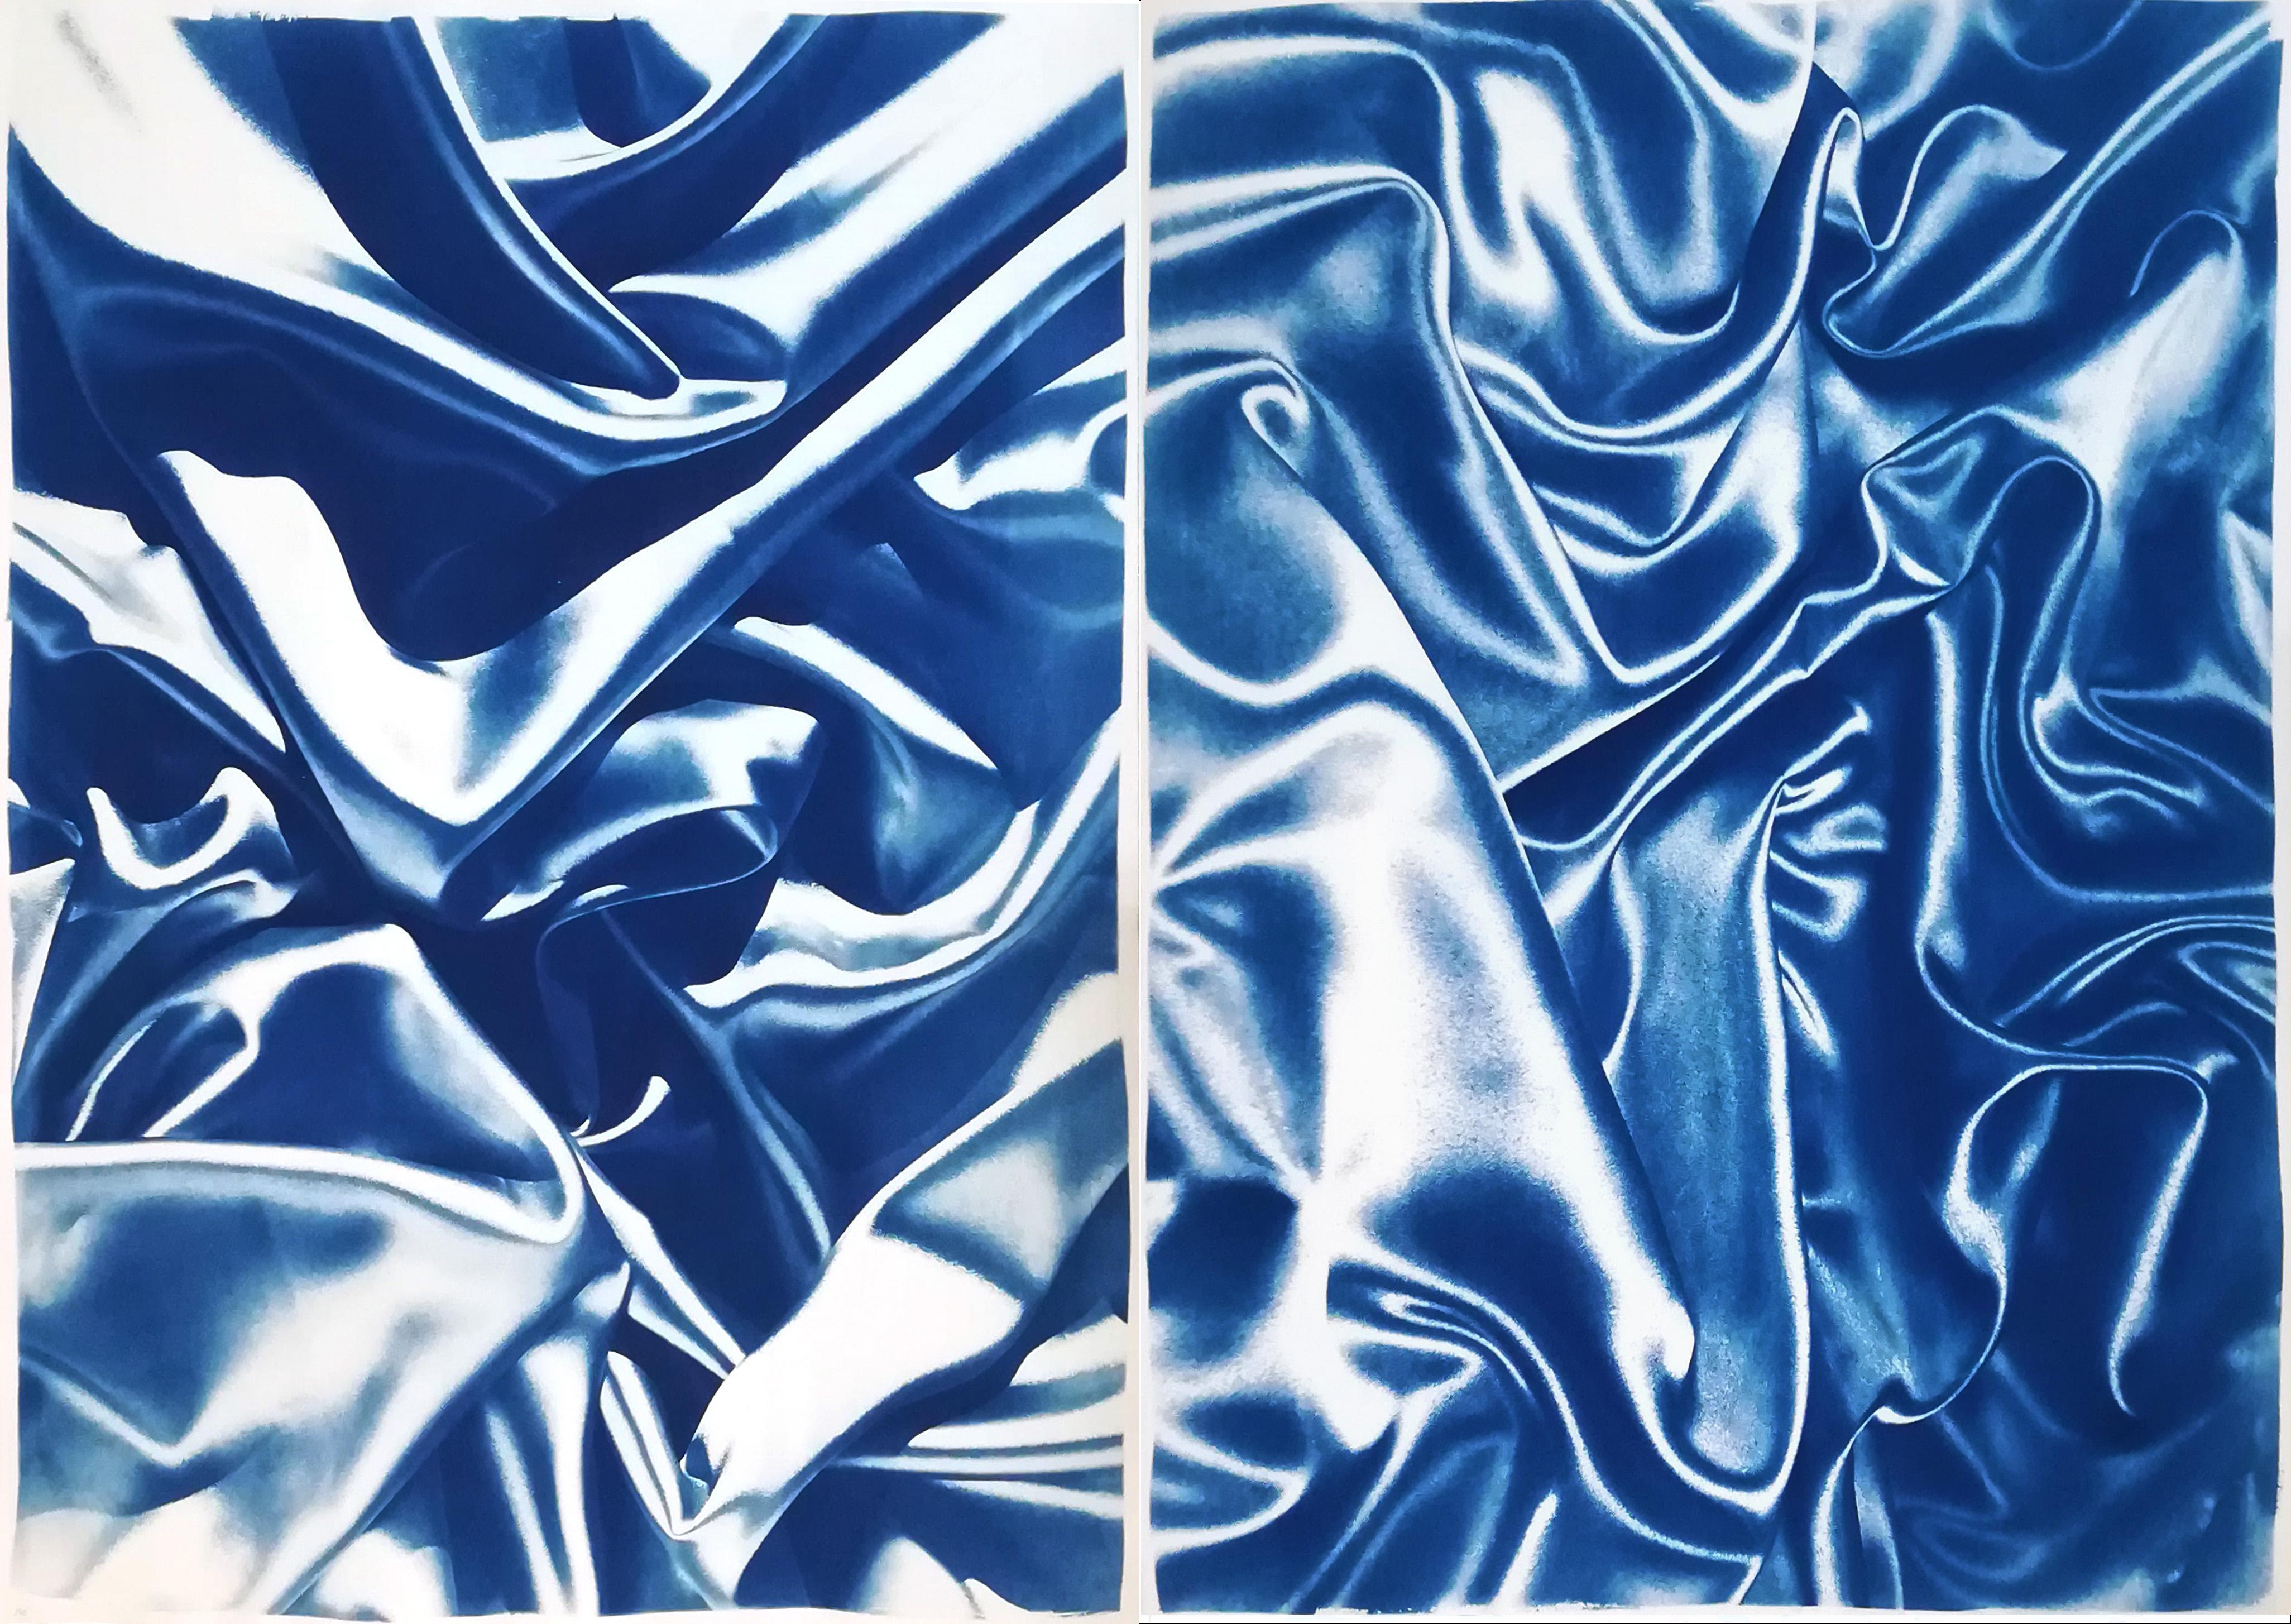 Landscape Painting Kind of Cyan - Diptyque de soies, formes sensuelles bleues classiques, cyanotype sur papier aquarelle 